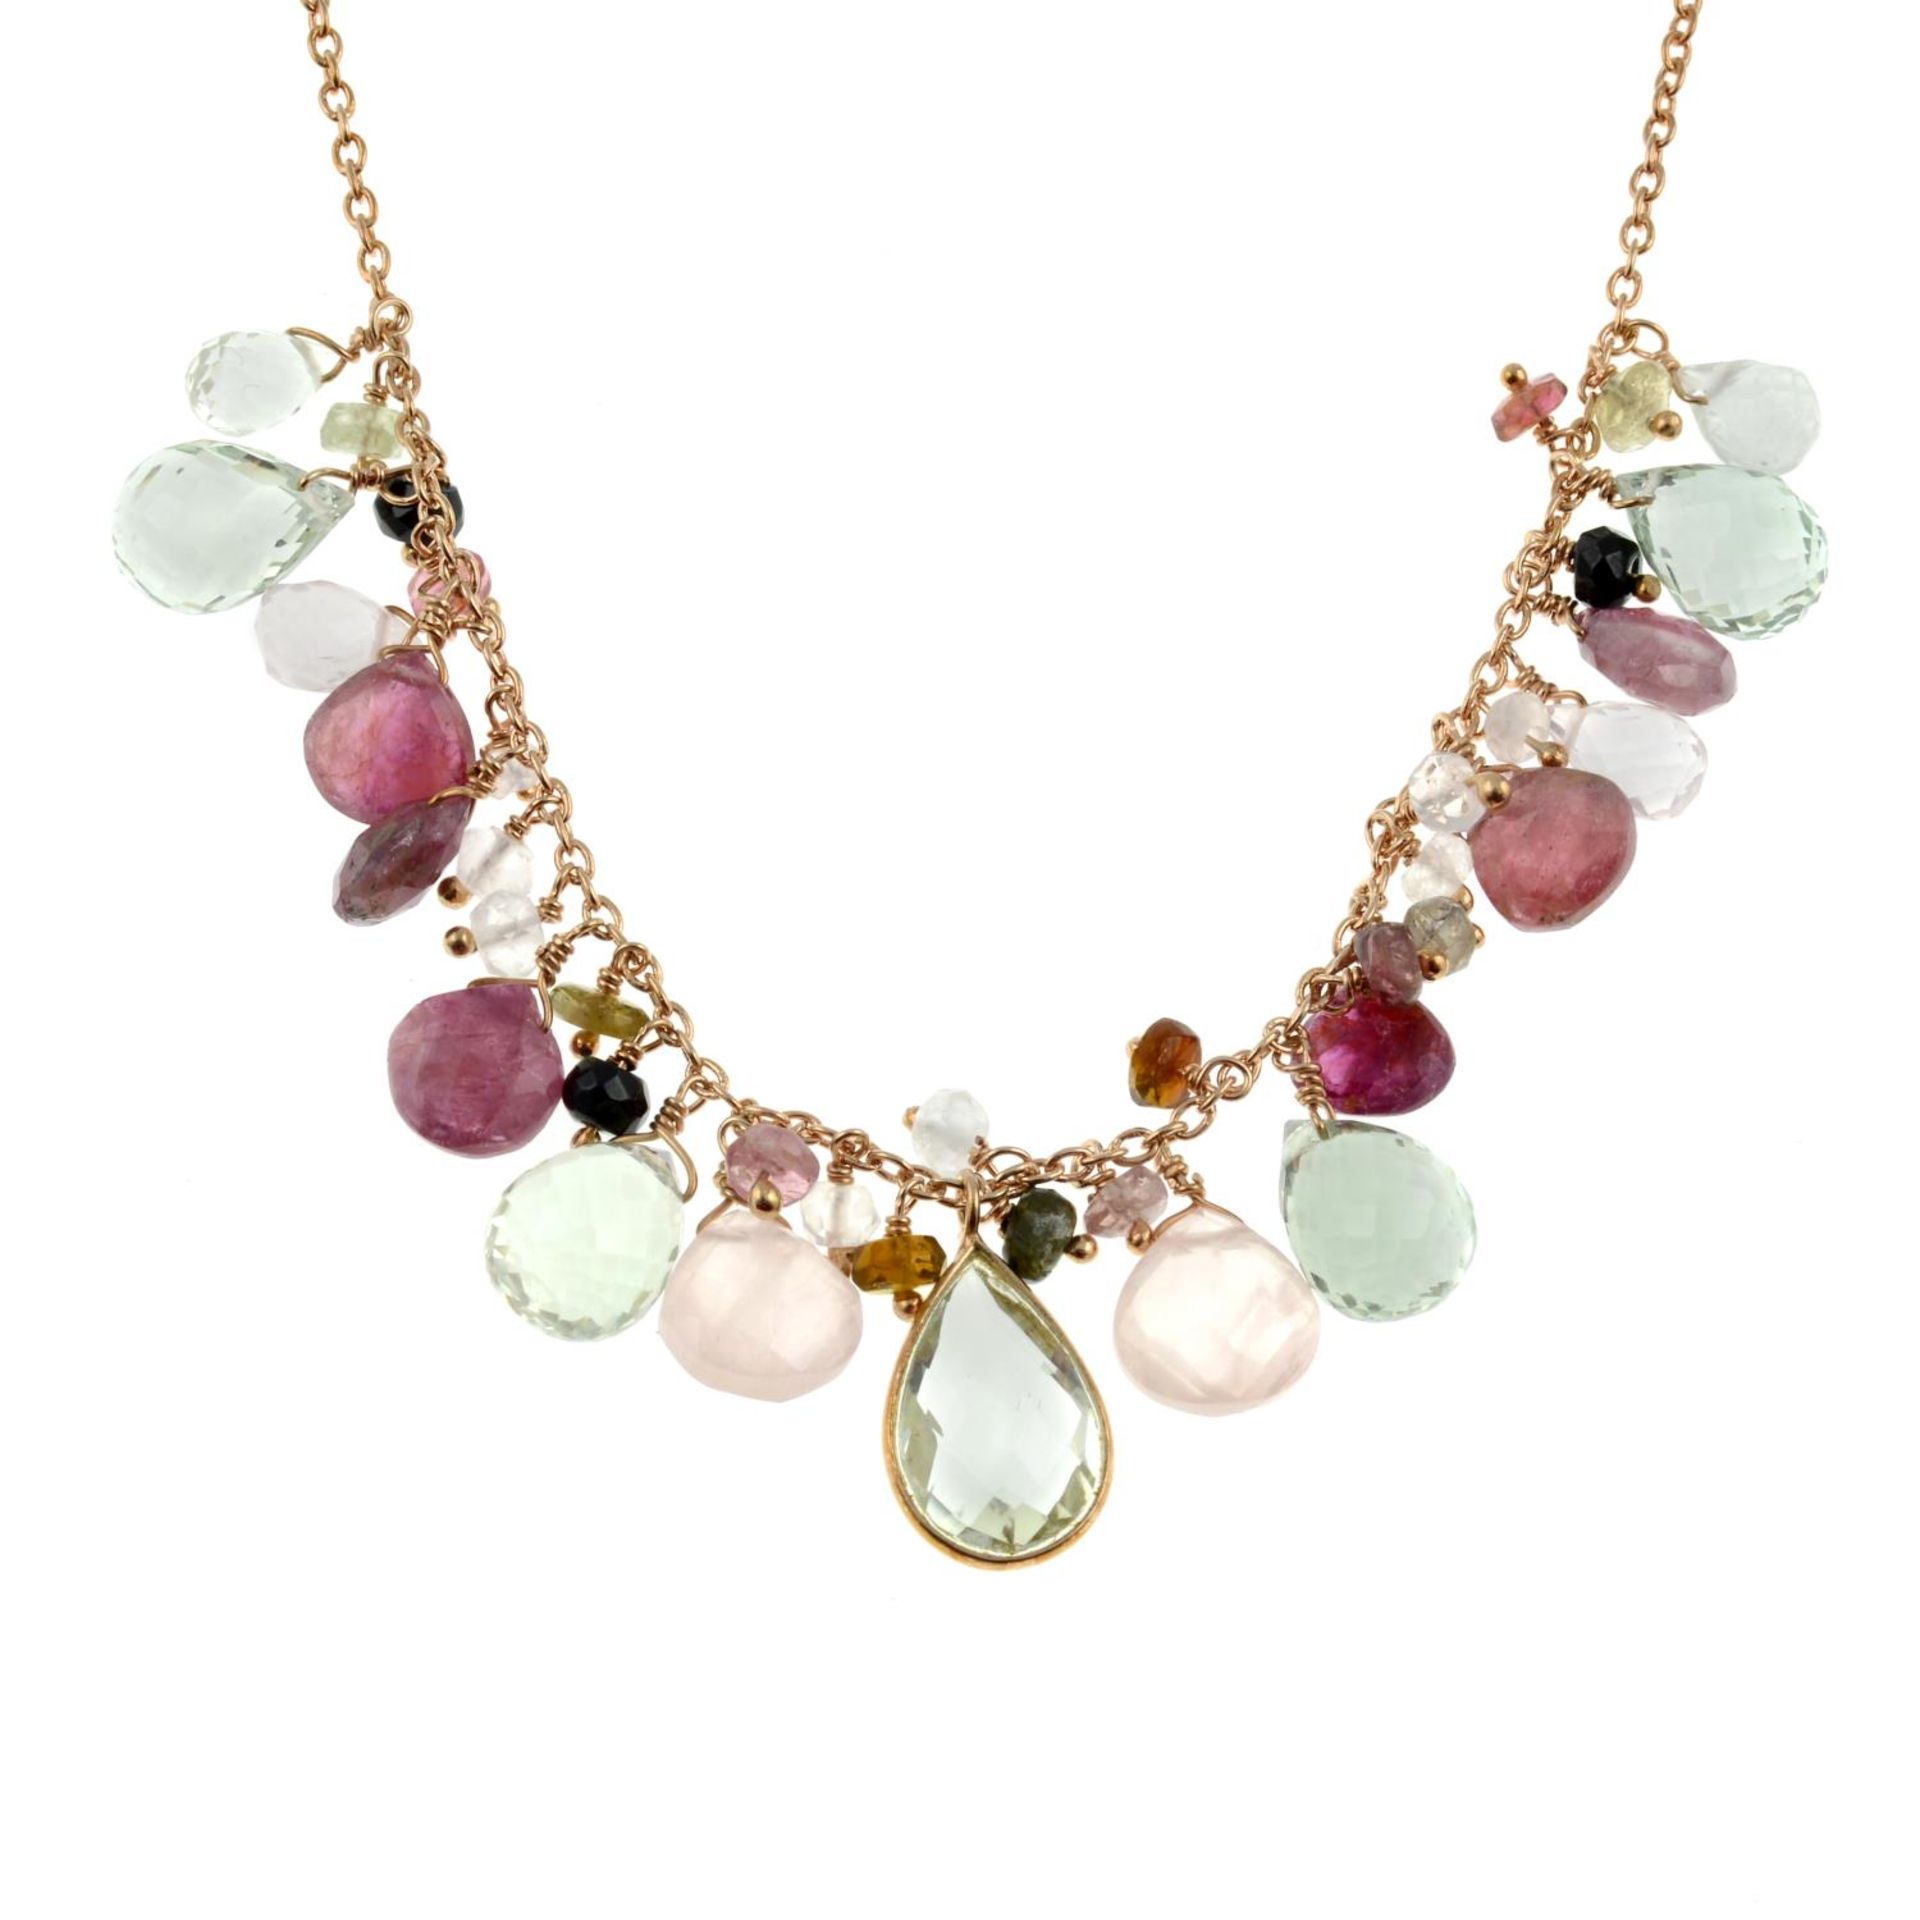 A tourmaline and gem set necklace,